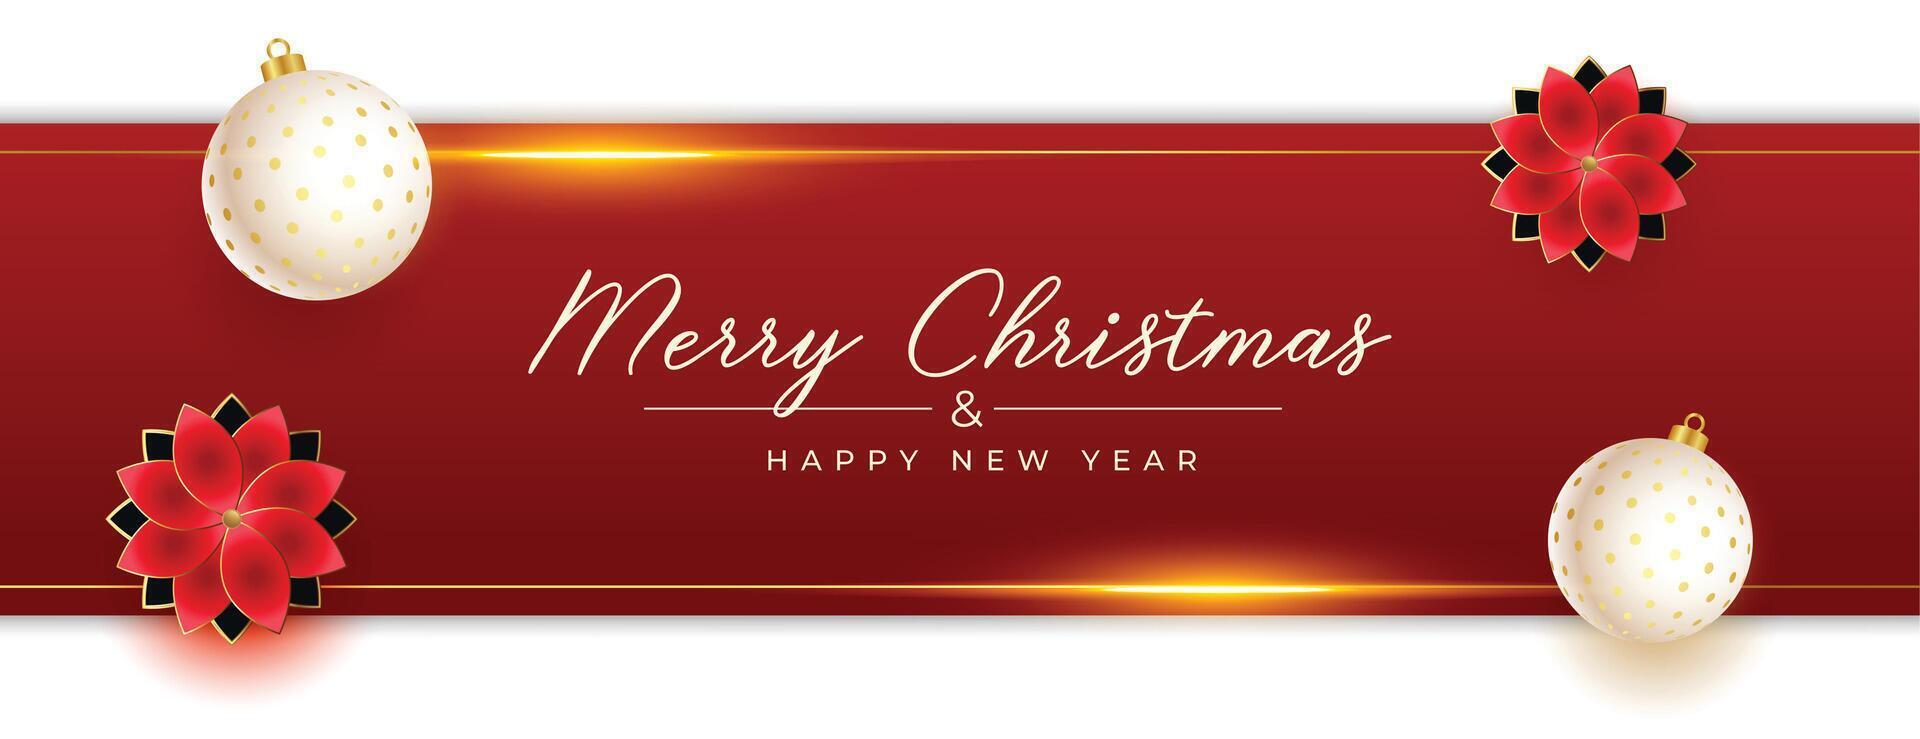 fröhlich Weihnachten und glücklich Neu Jahr Veranstaltung Banner Design vektor